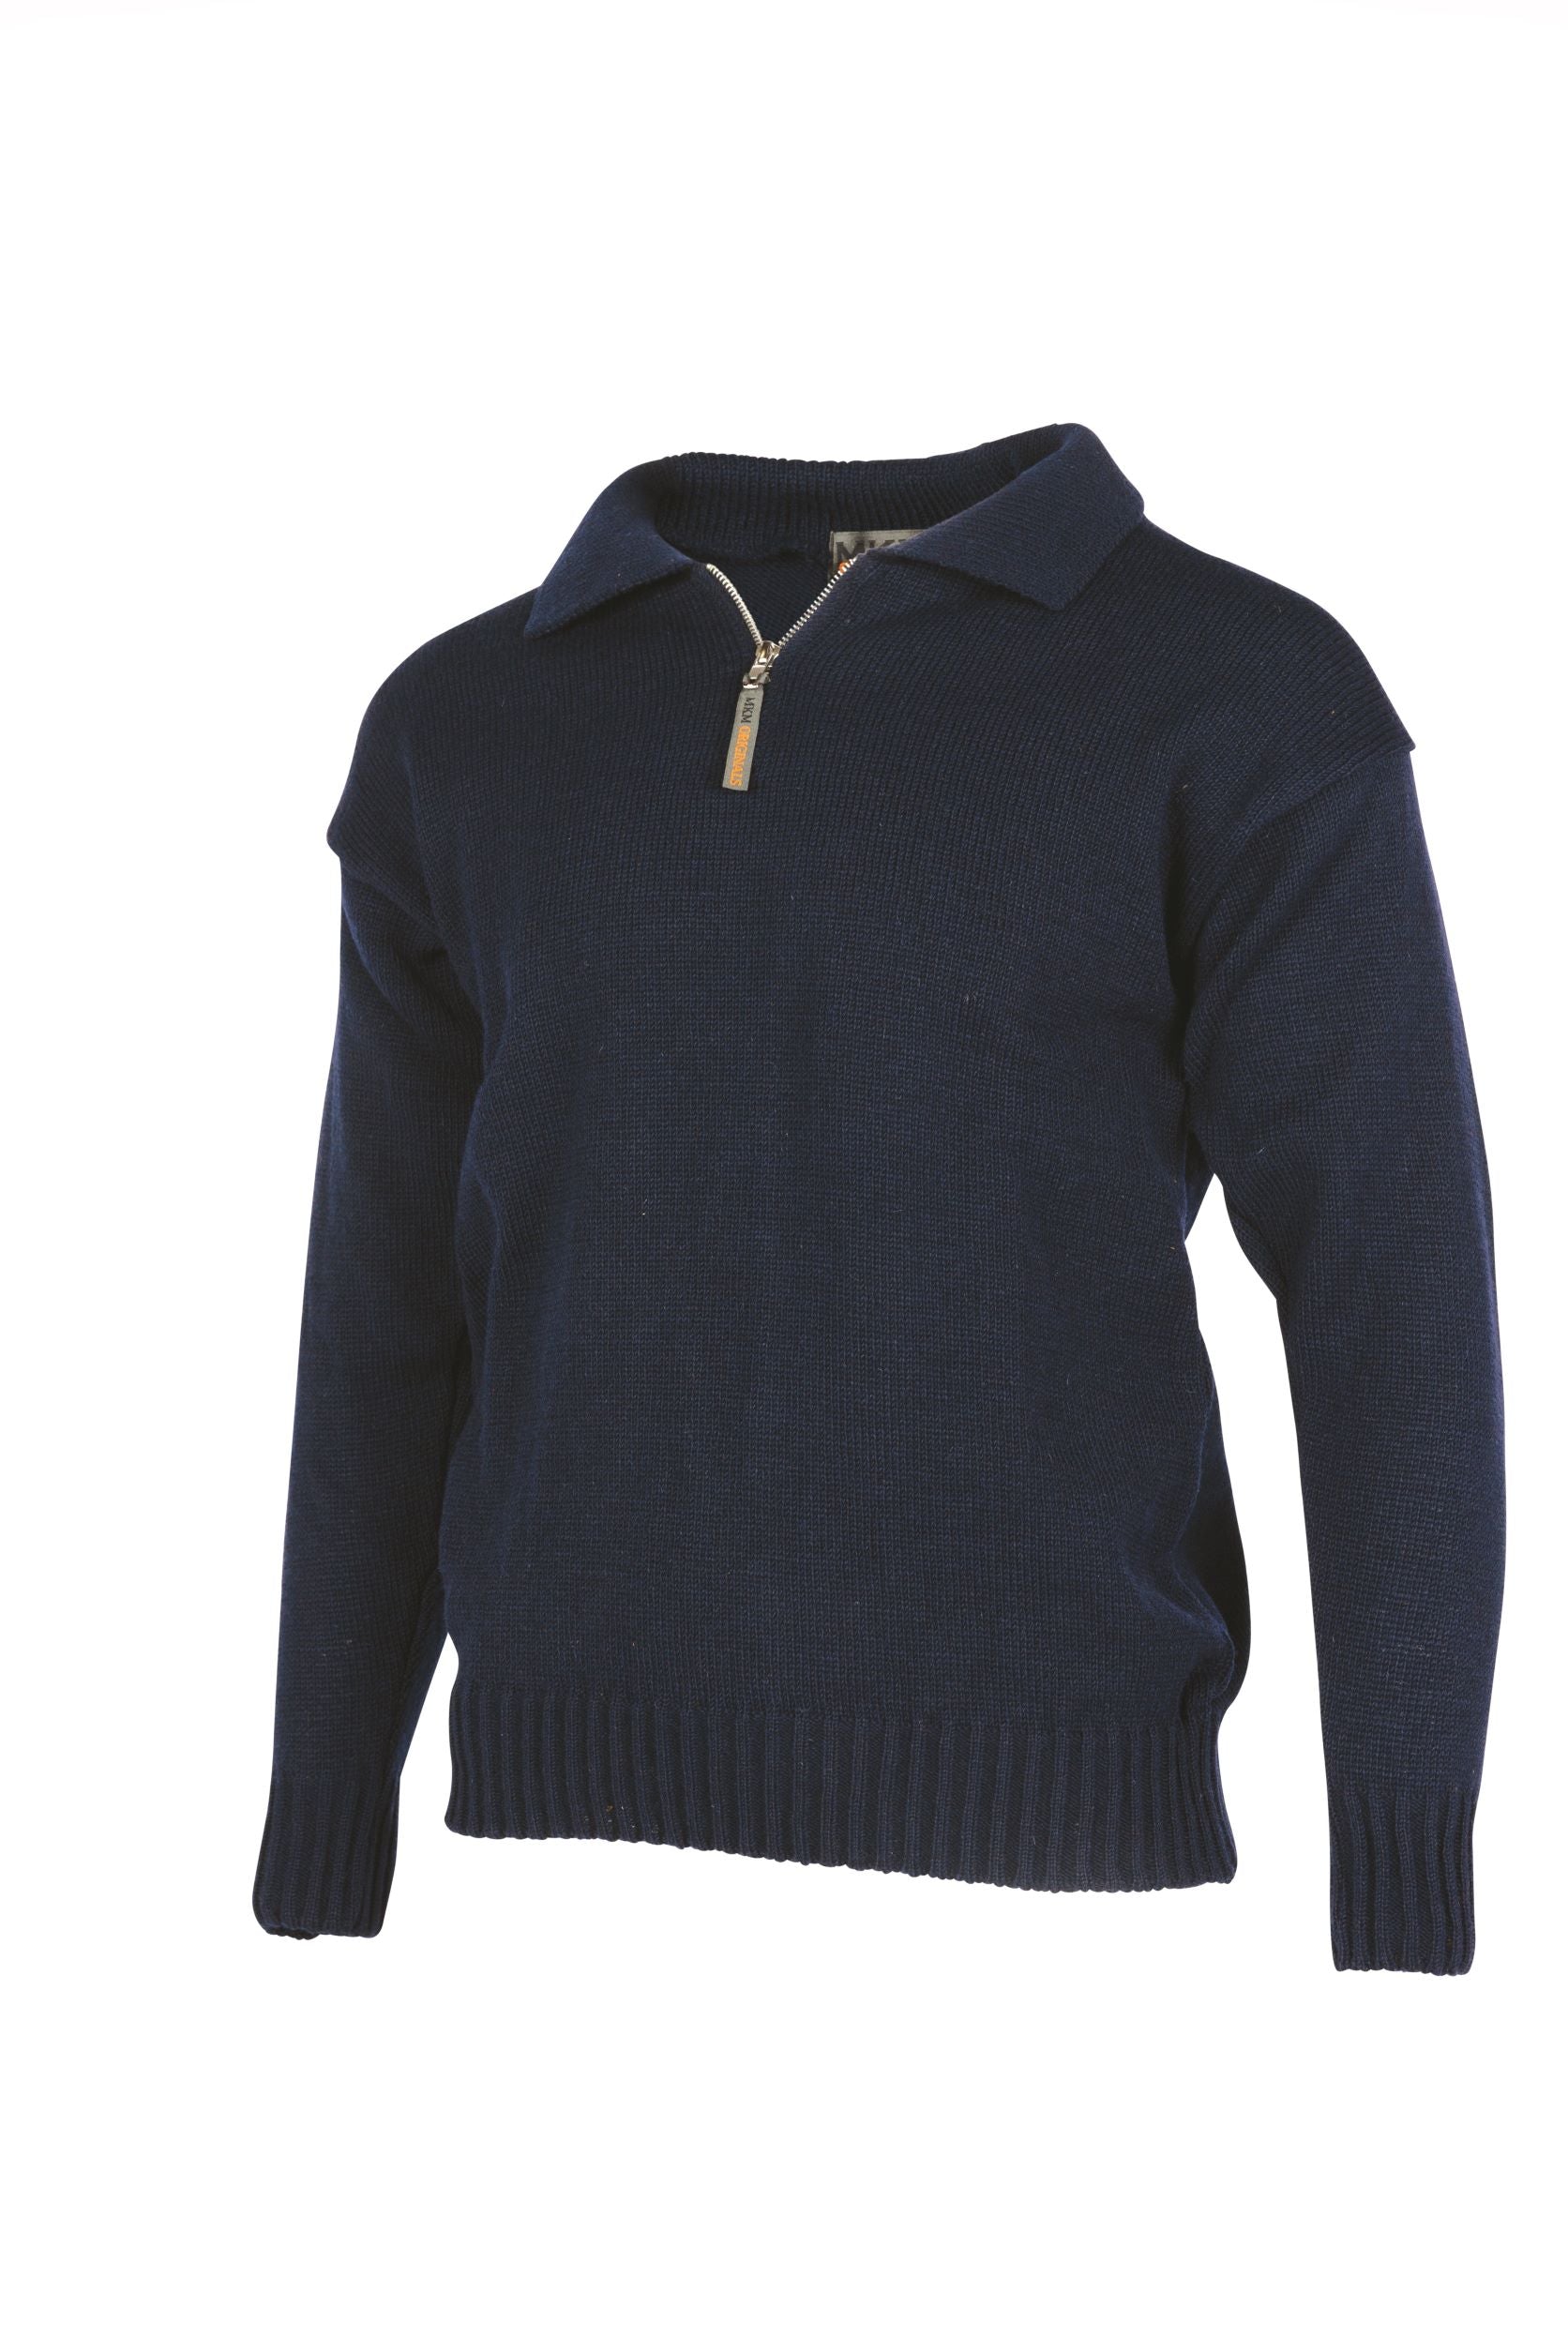 Merino Wool Workwear Sweater - MKM Knitwear